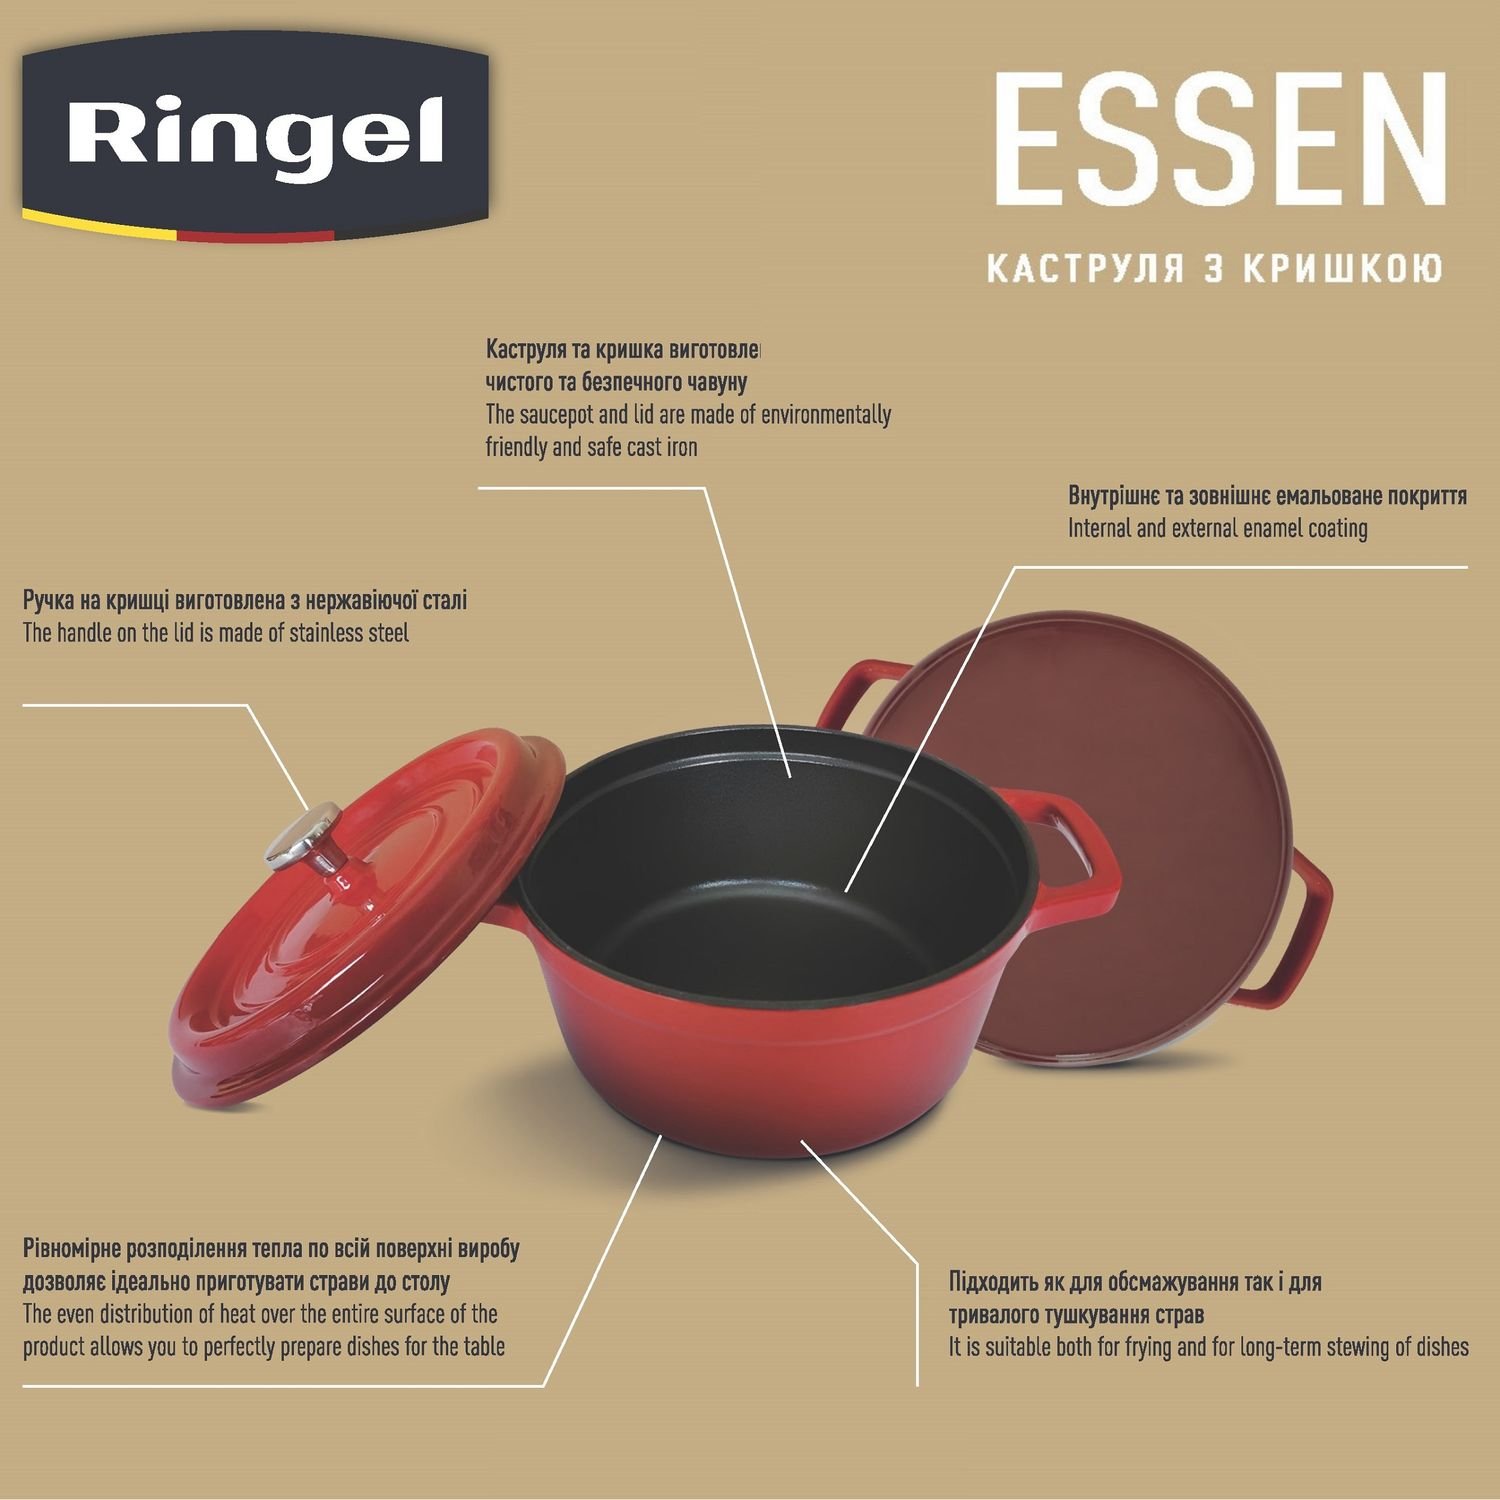 Каструля Ringel Essen, з кришкою, 24 см, 3,8 л, червона (RG-2300-24) - фото 5